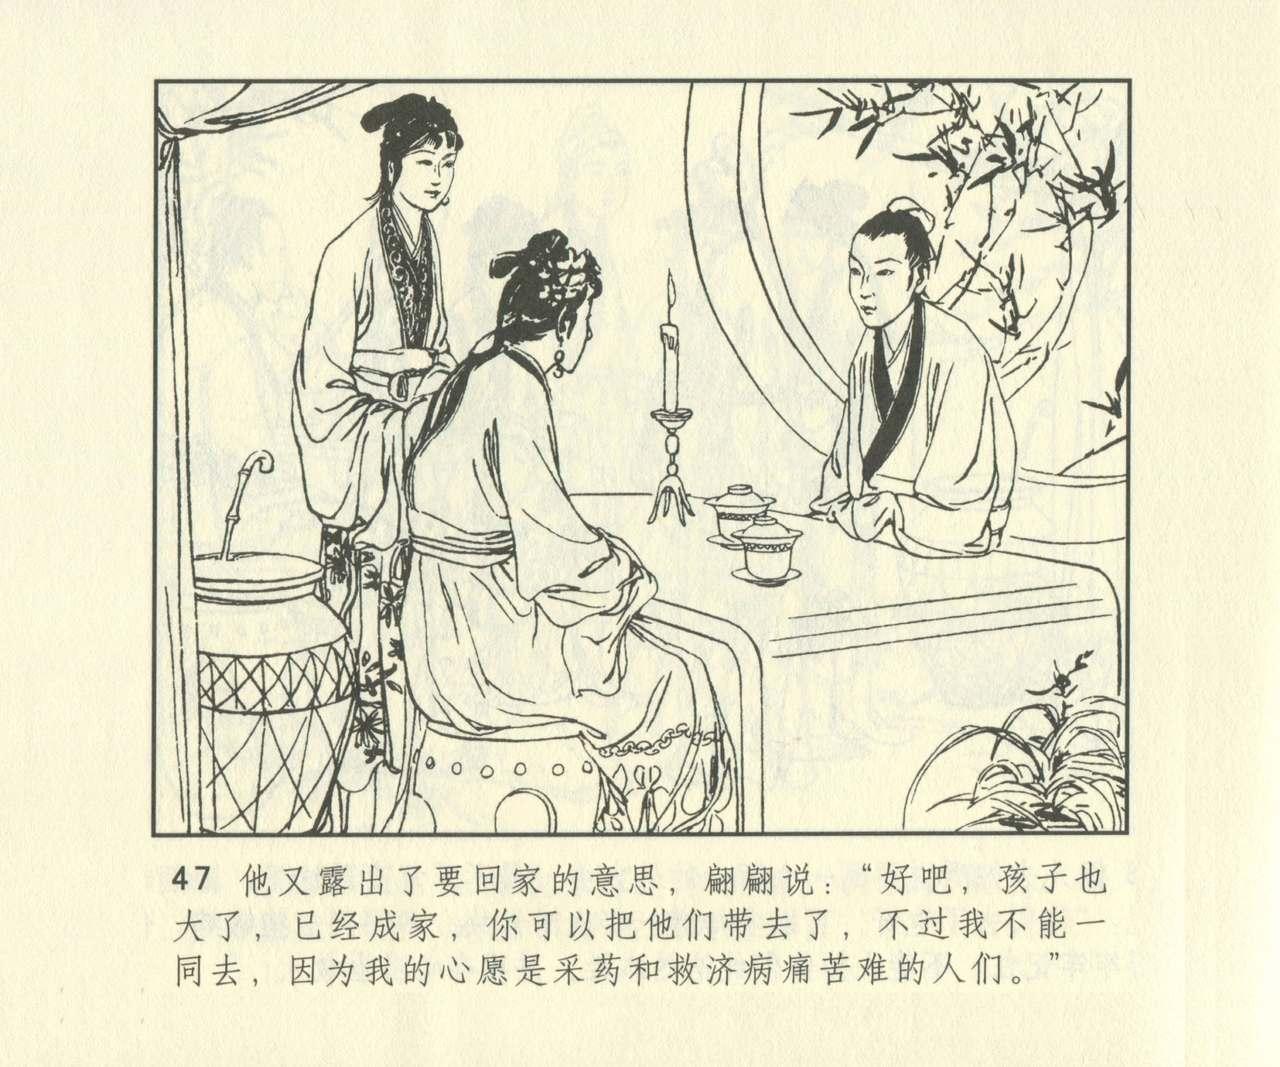 聊斋志异 张玮等绘 天津人民美术出版社 卷二十一 ~ 三十 663